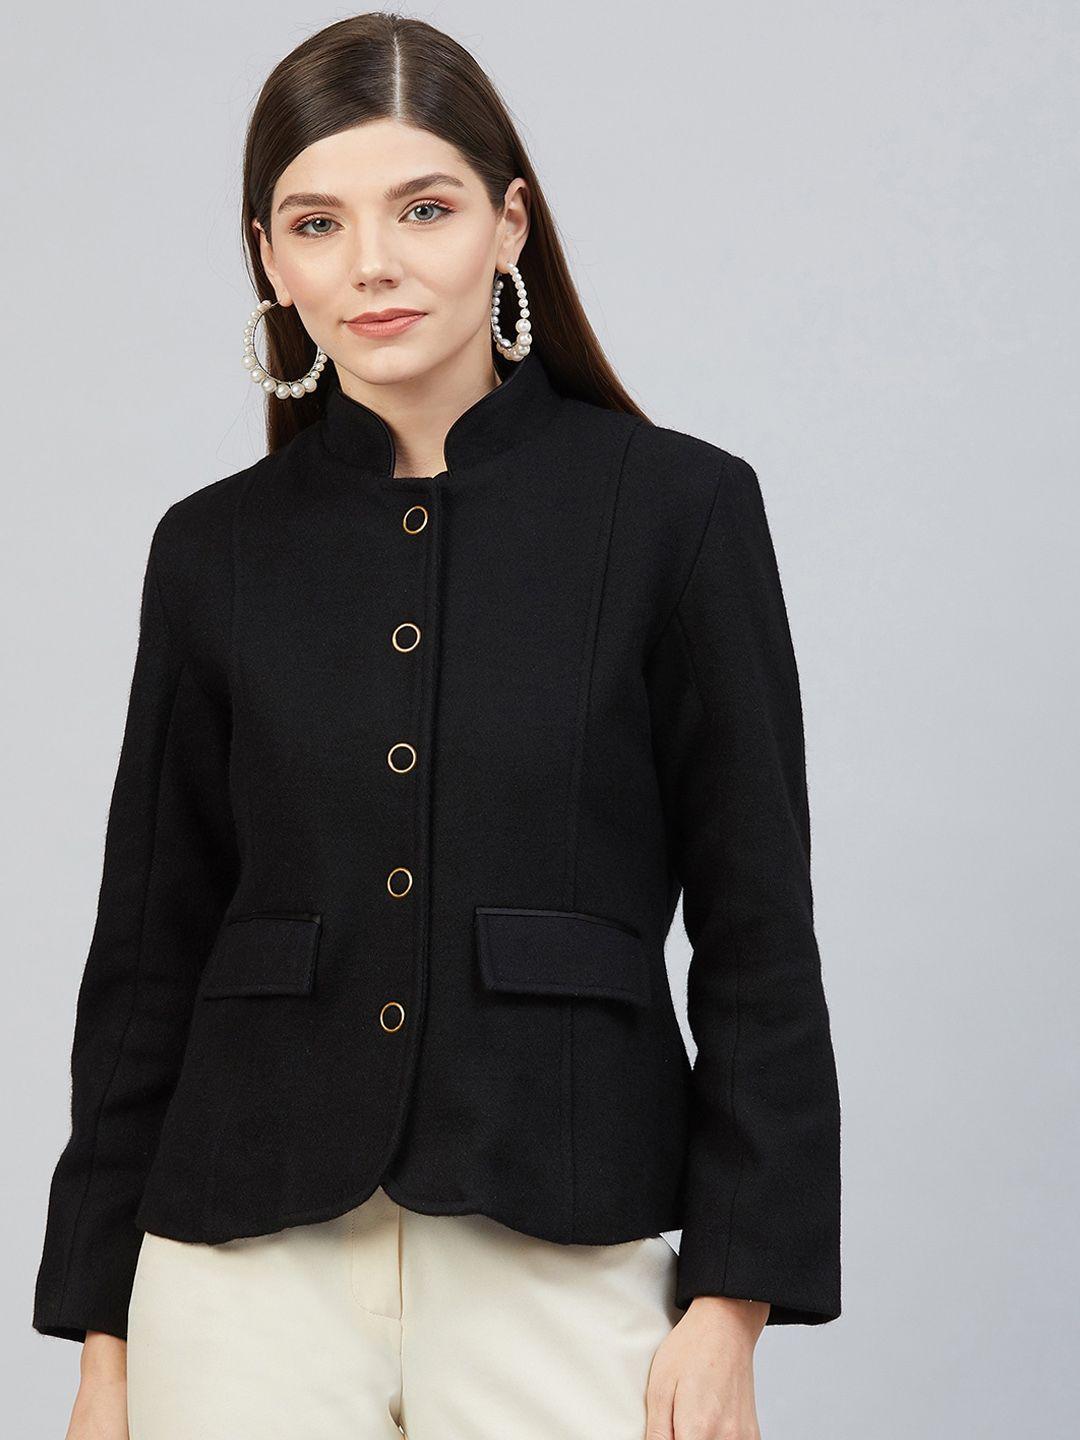 carlton-london-women-black-wool-tailored-jacket